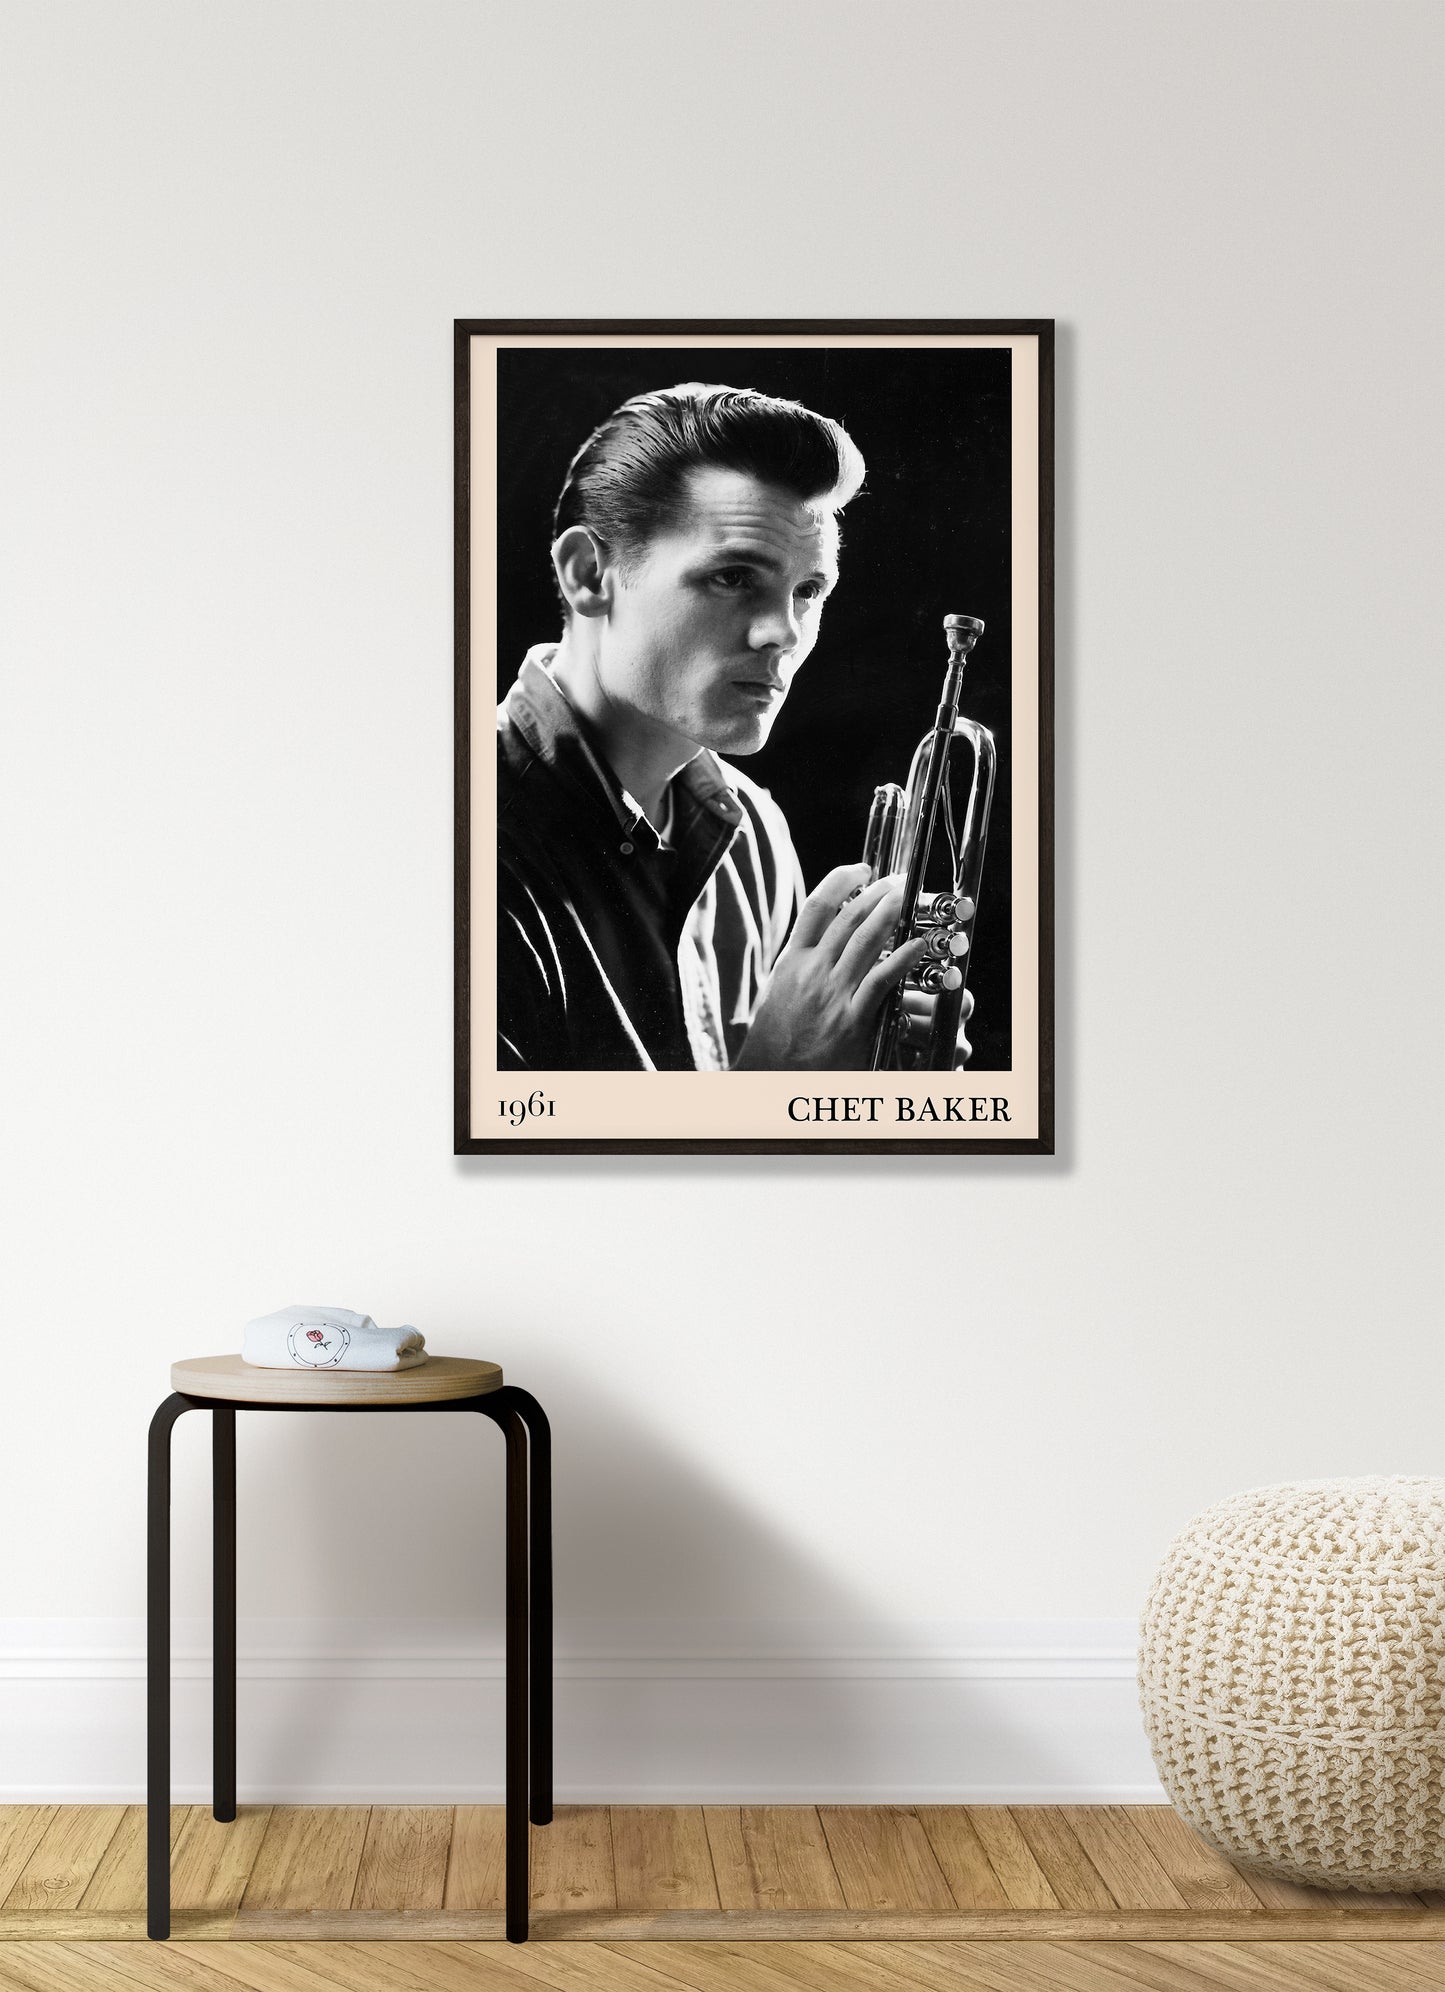 Living room framed poster of A1 Chet Baker